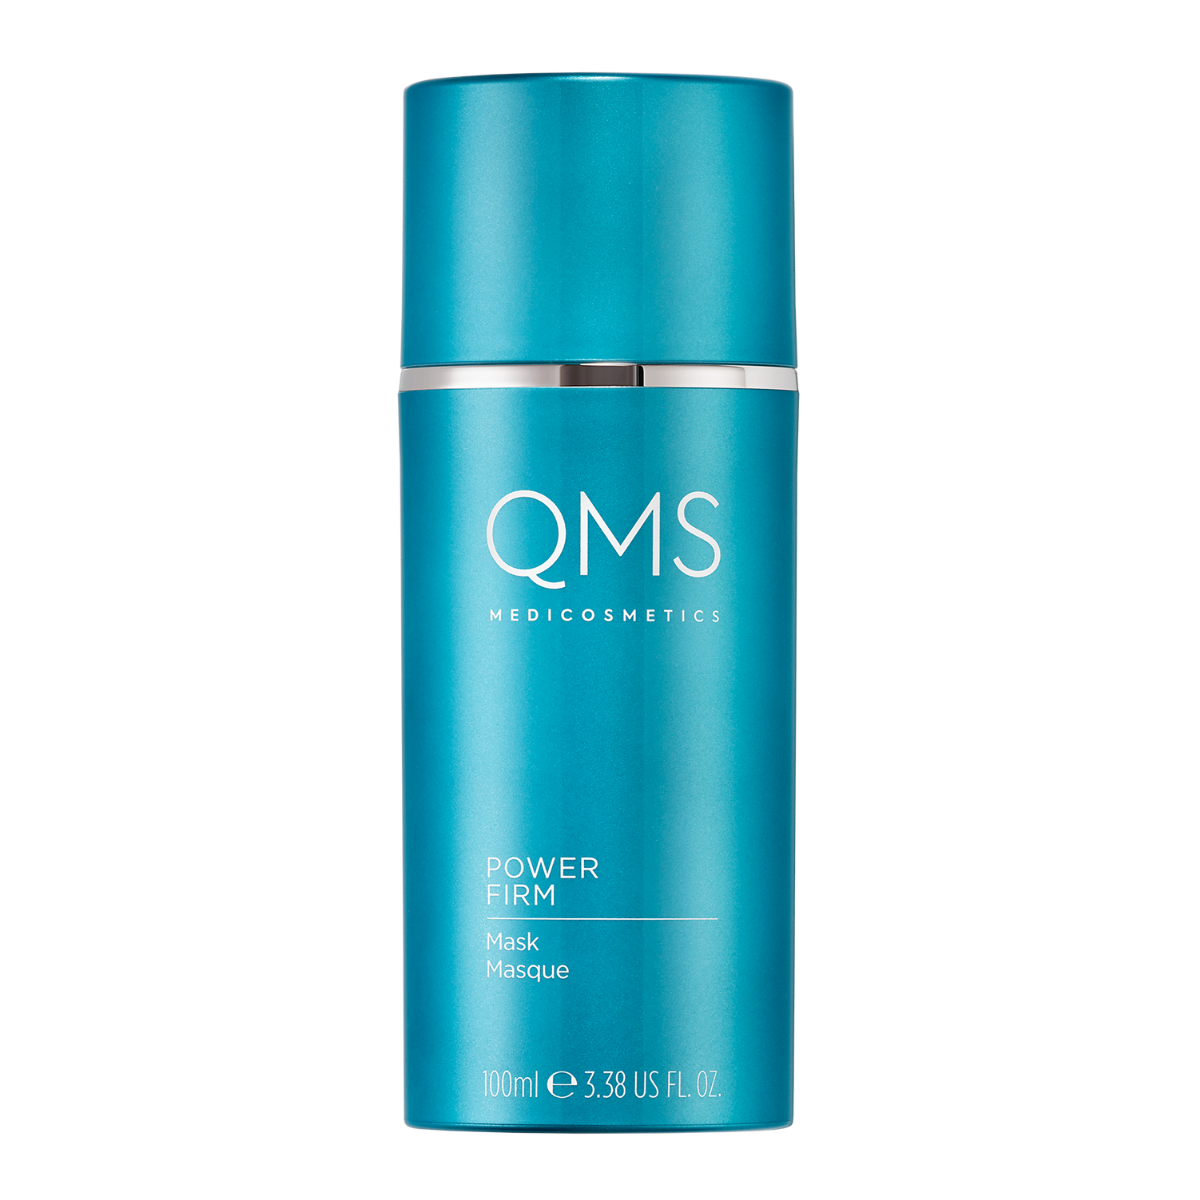 QMS Medicosmetics stangrinamoji veido kaukė / Power Firm Mask 100 ml